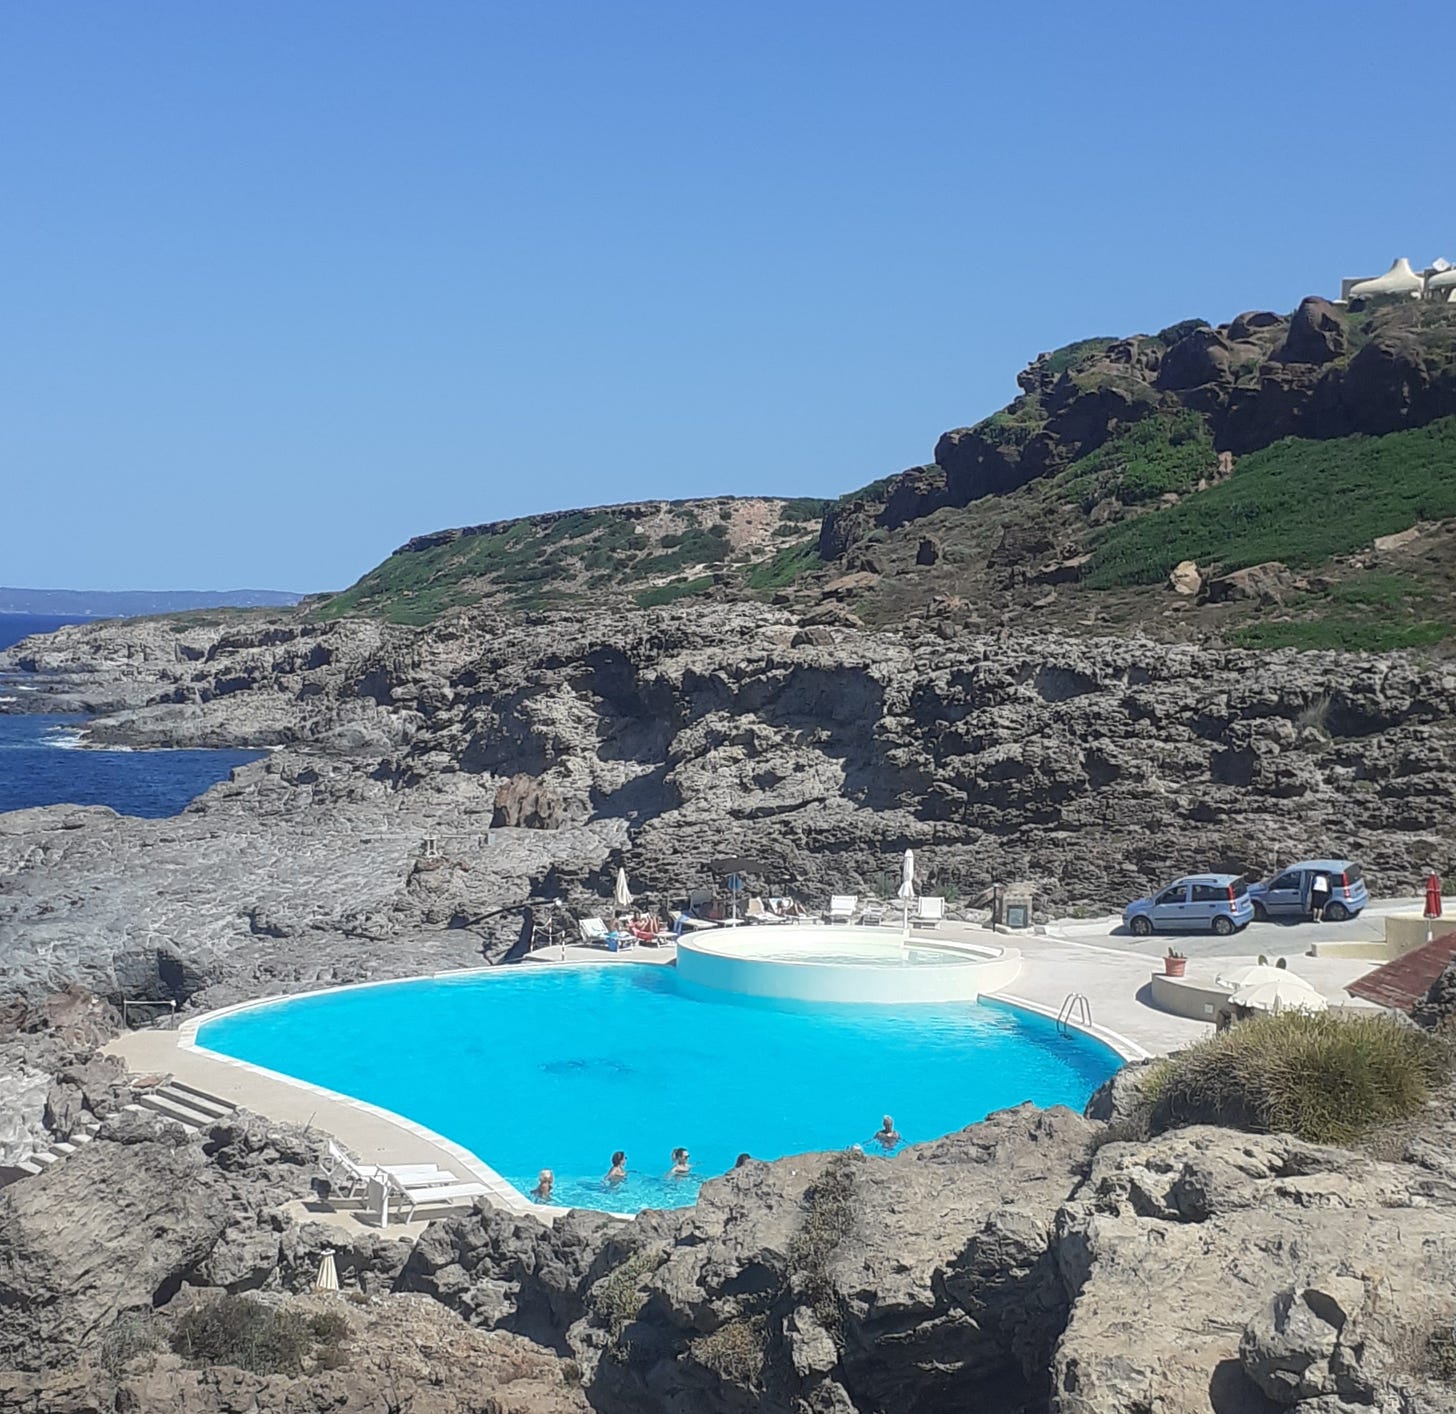 Una piscina artificiale scavata sulla roccia di fronte al mare sull'isola di Sant'Antioco: alcune persone stanno facendo il bagno mentre altre prendono il sole nelle sedie a sdraio a bordo piscina.